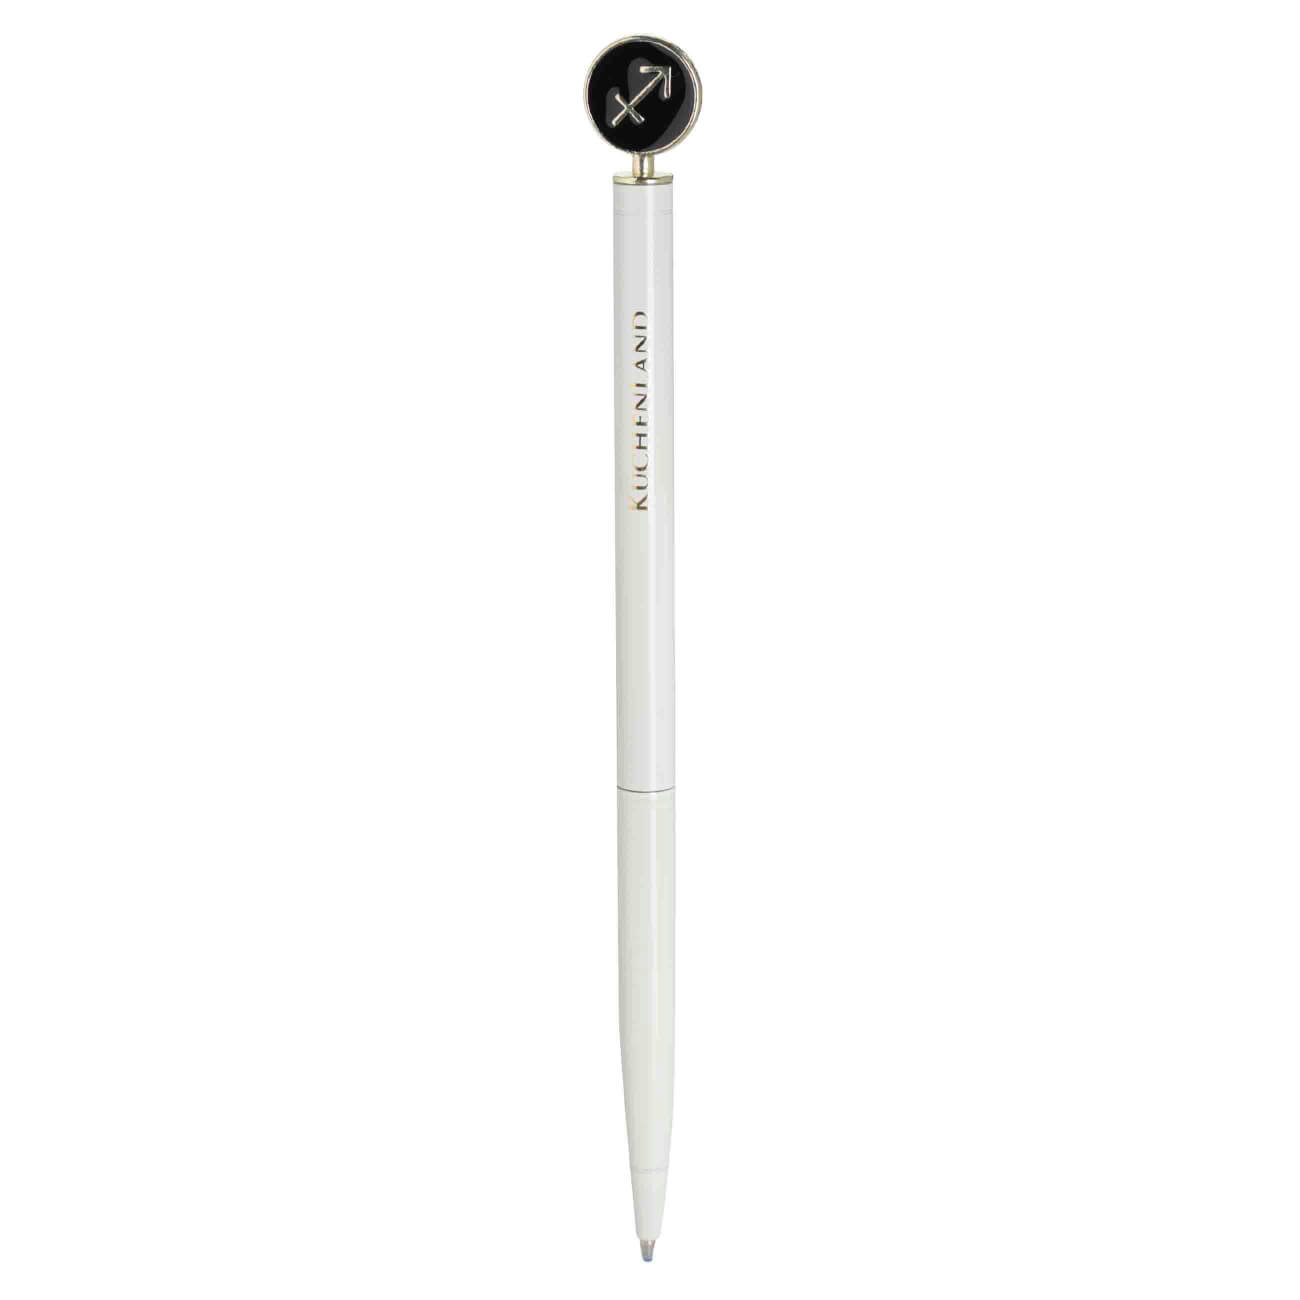 Ручка шариковая, 15 см, с фигуркой, сталь, молочно-золотистая, Стрелец, Zodiac грабли длина 25 см деревянная ручка